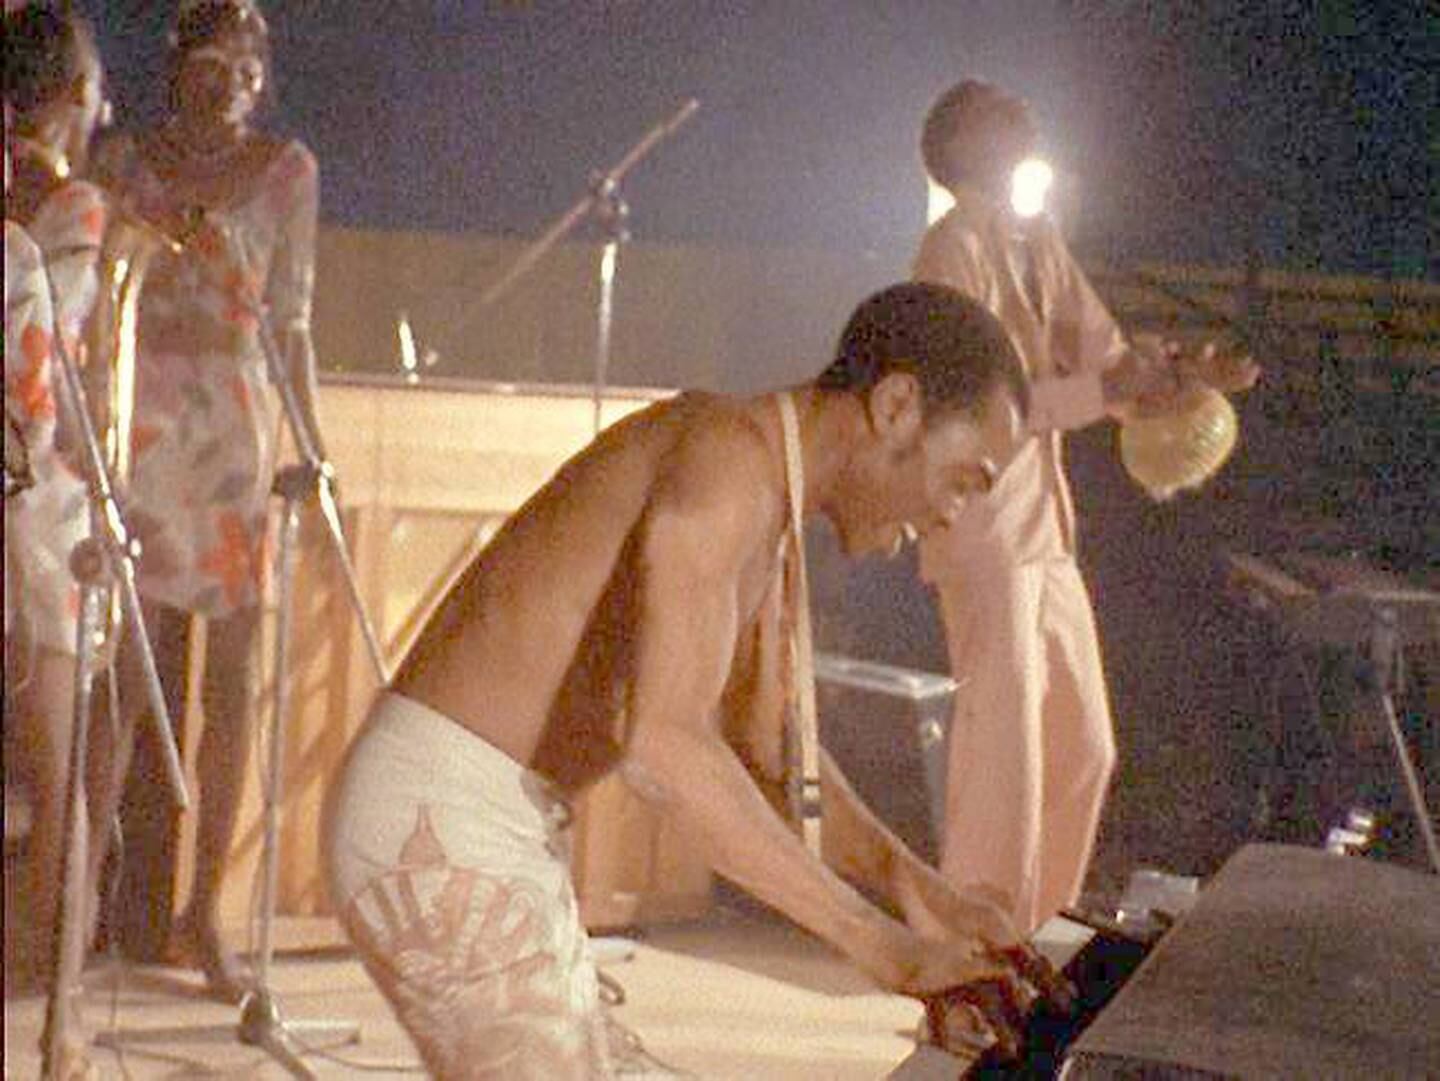 Fela Kuti i aksjon på scenen. Fra filmen «Finding Fela».